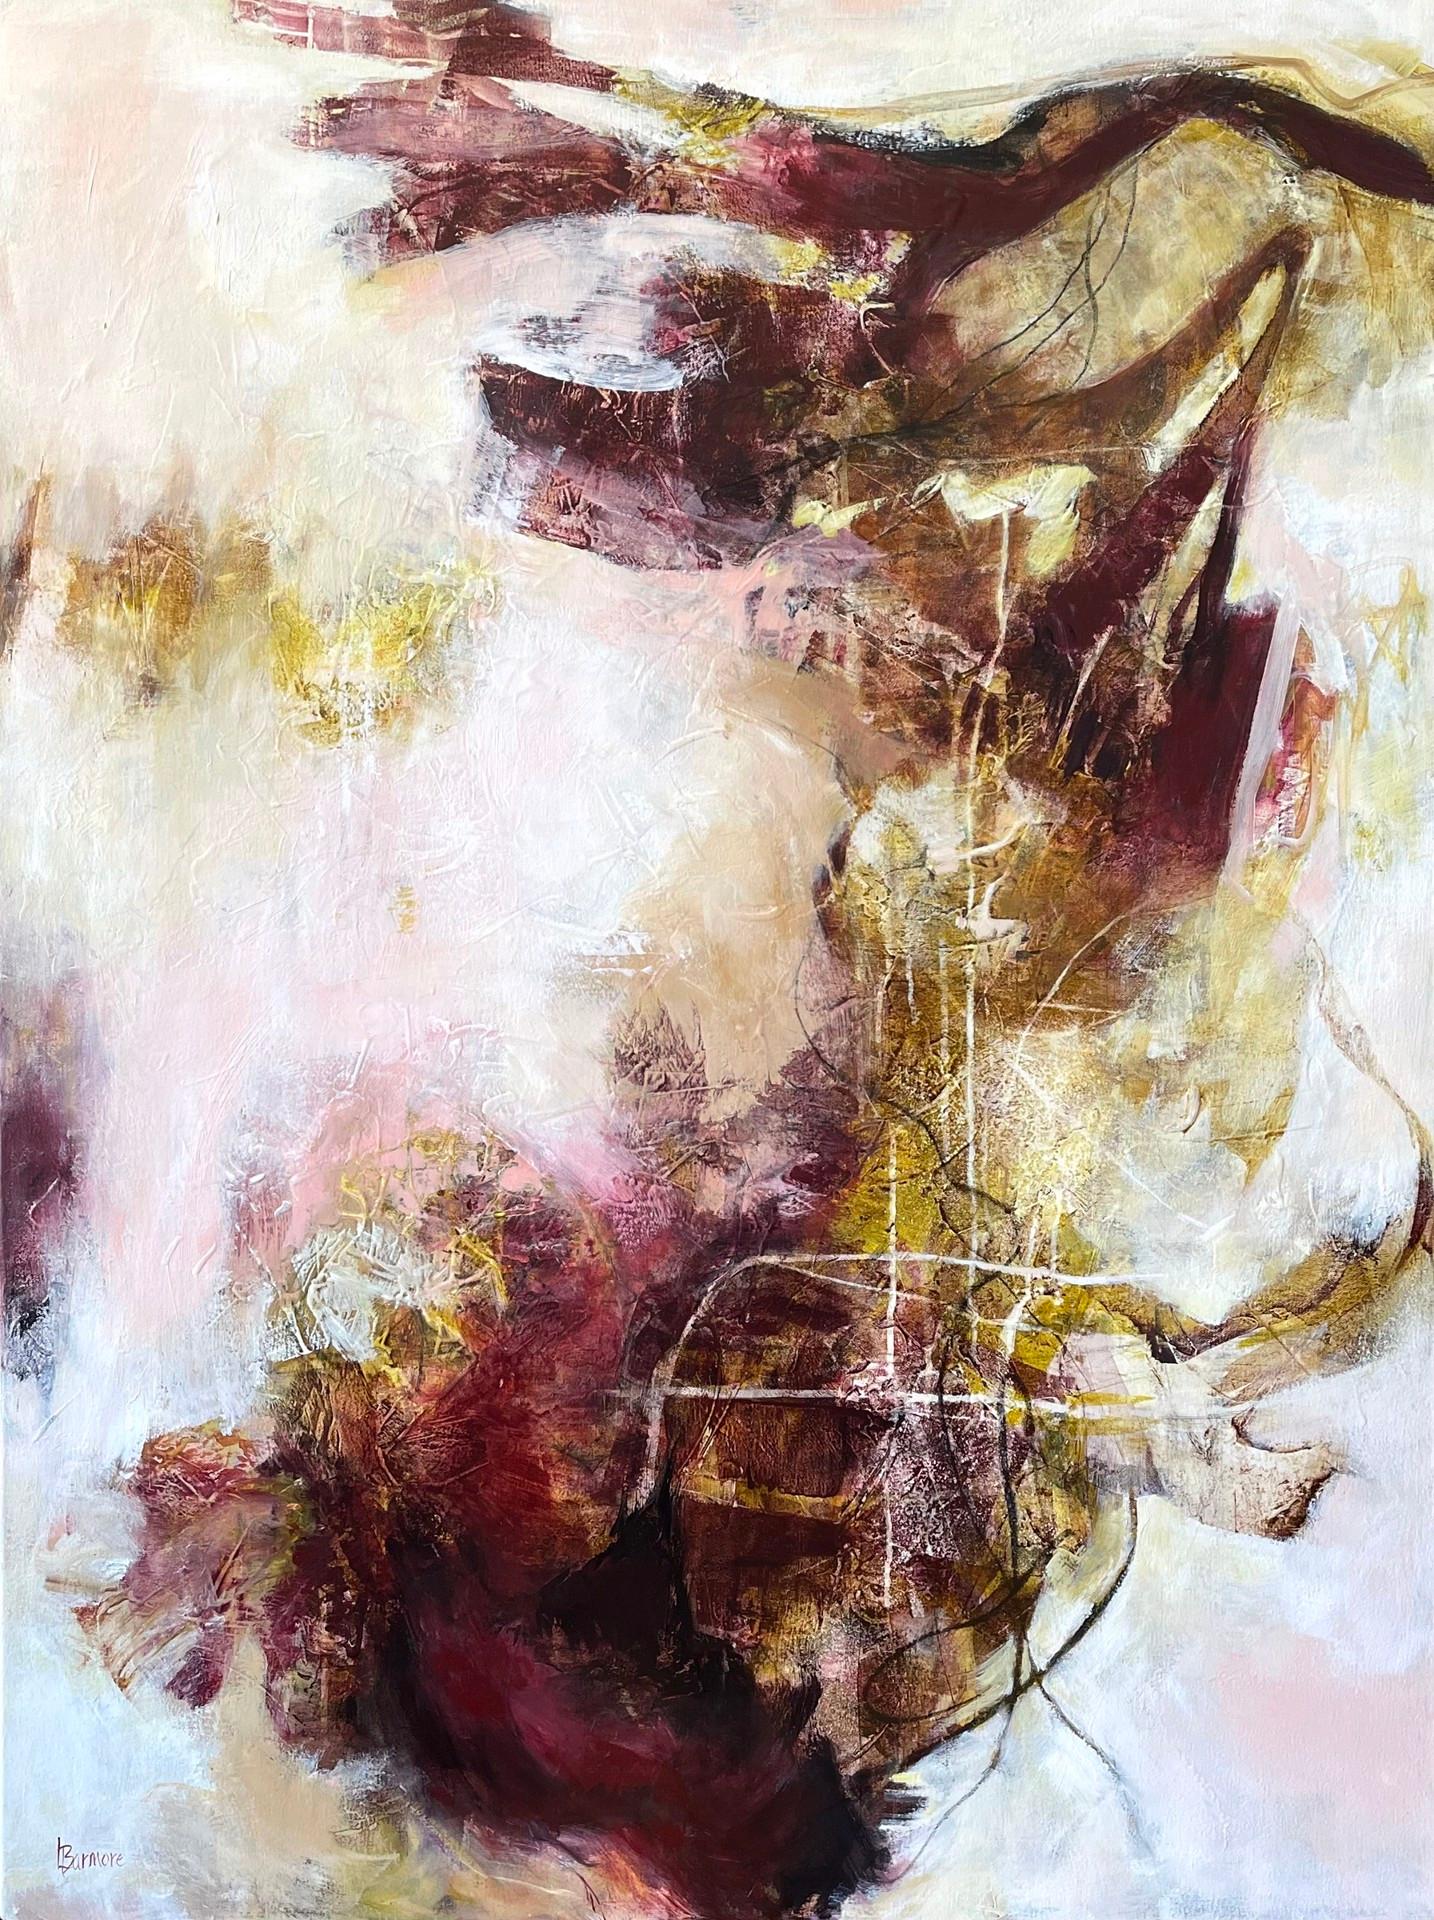 Keimung -  Zeitgenössisches Gemälde (Pink + Maroon + Weiß + Gold)